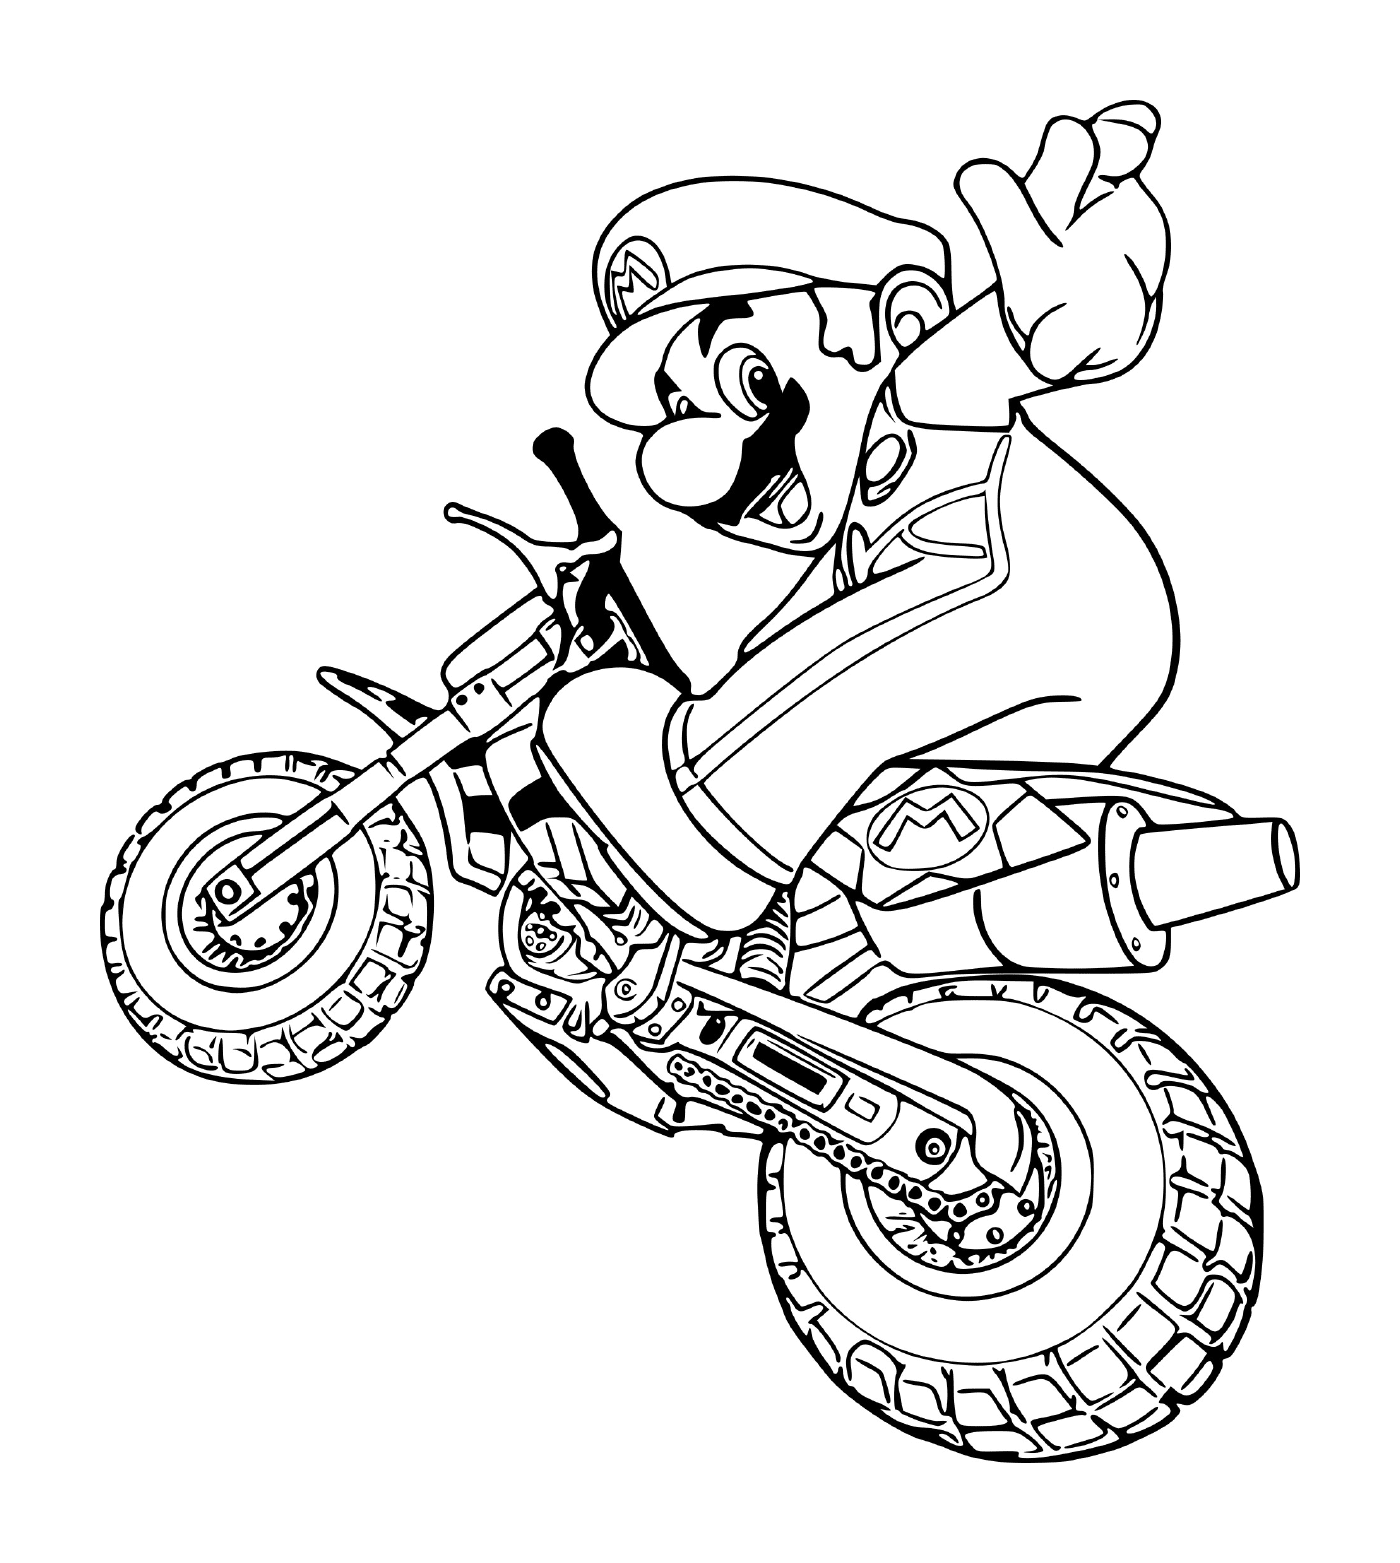  Mario en modo de motocicleta, en una motocicleta 